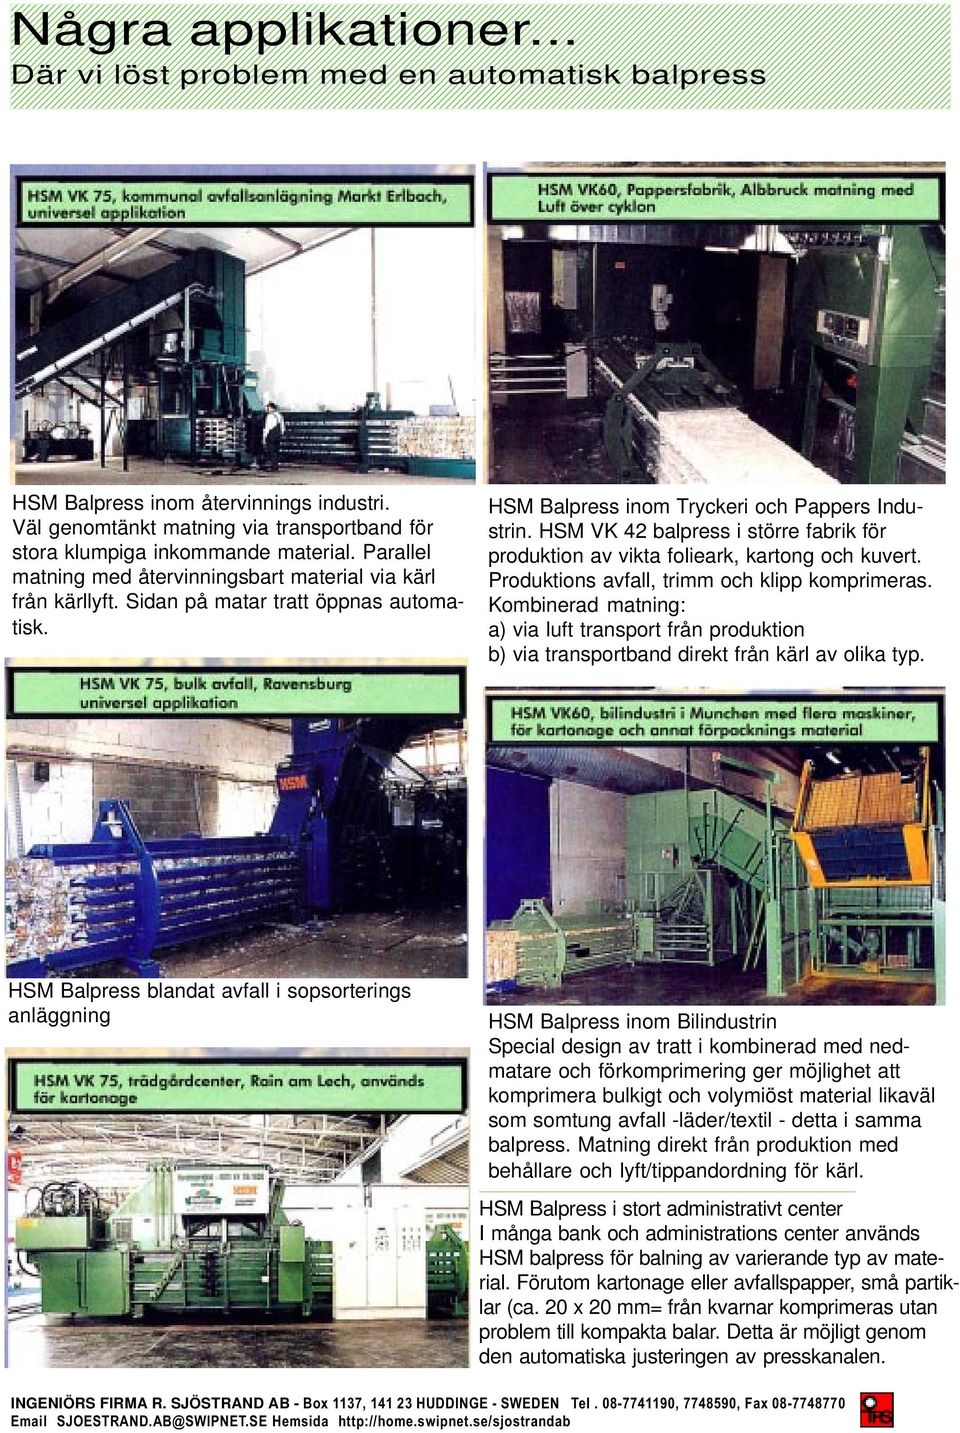 HSM VK 42 balpress i större fabrik för produktion av vikta folieark, kartong och kuvert. Produktions avfall, trimm och klipp komprimeras.